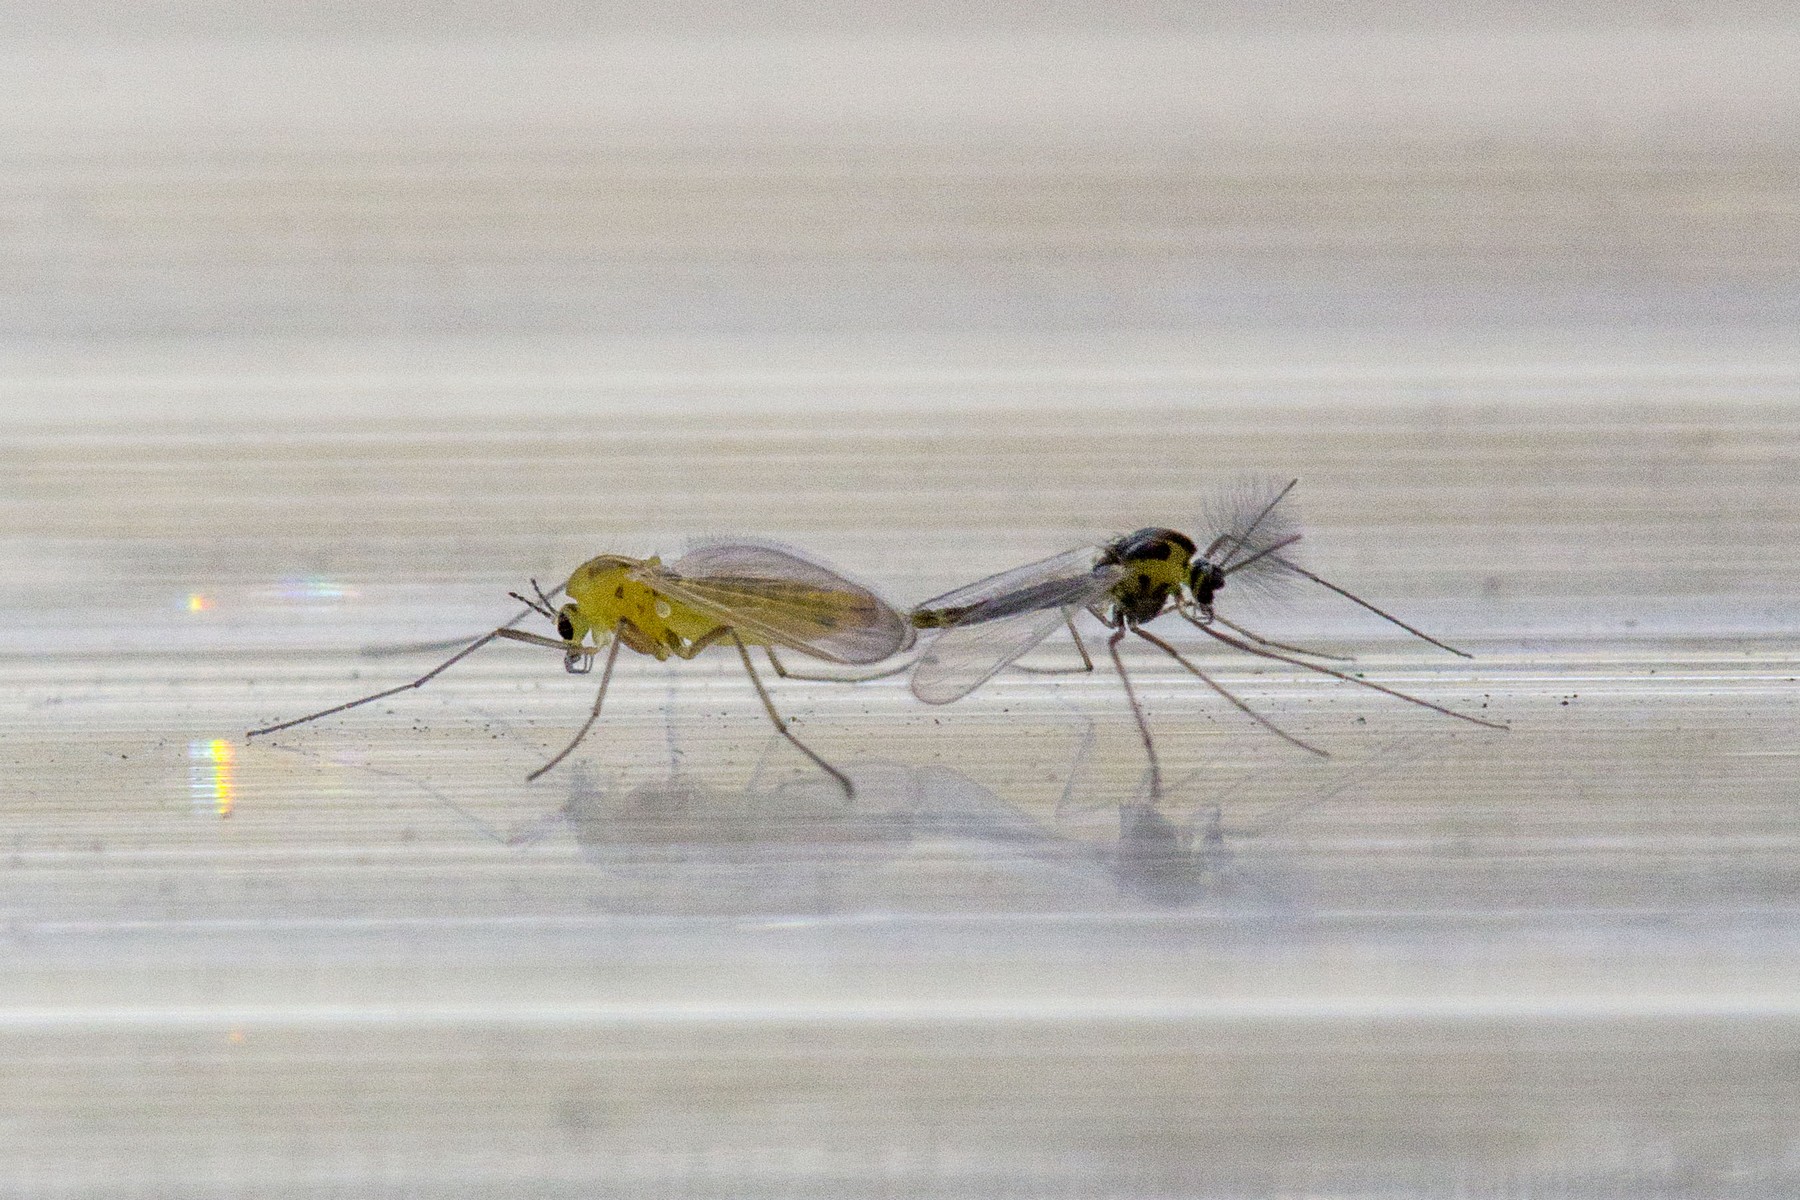 Сколько могут жить комары, как размножаются и чем питаются?